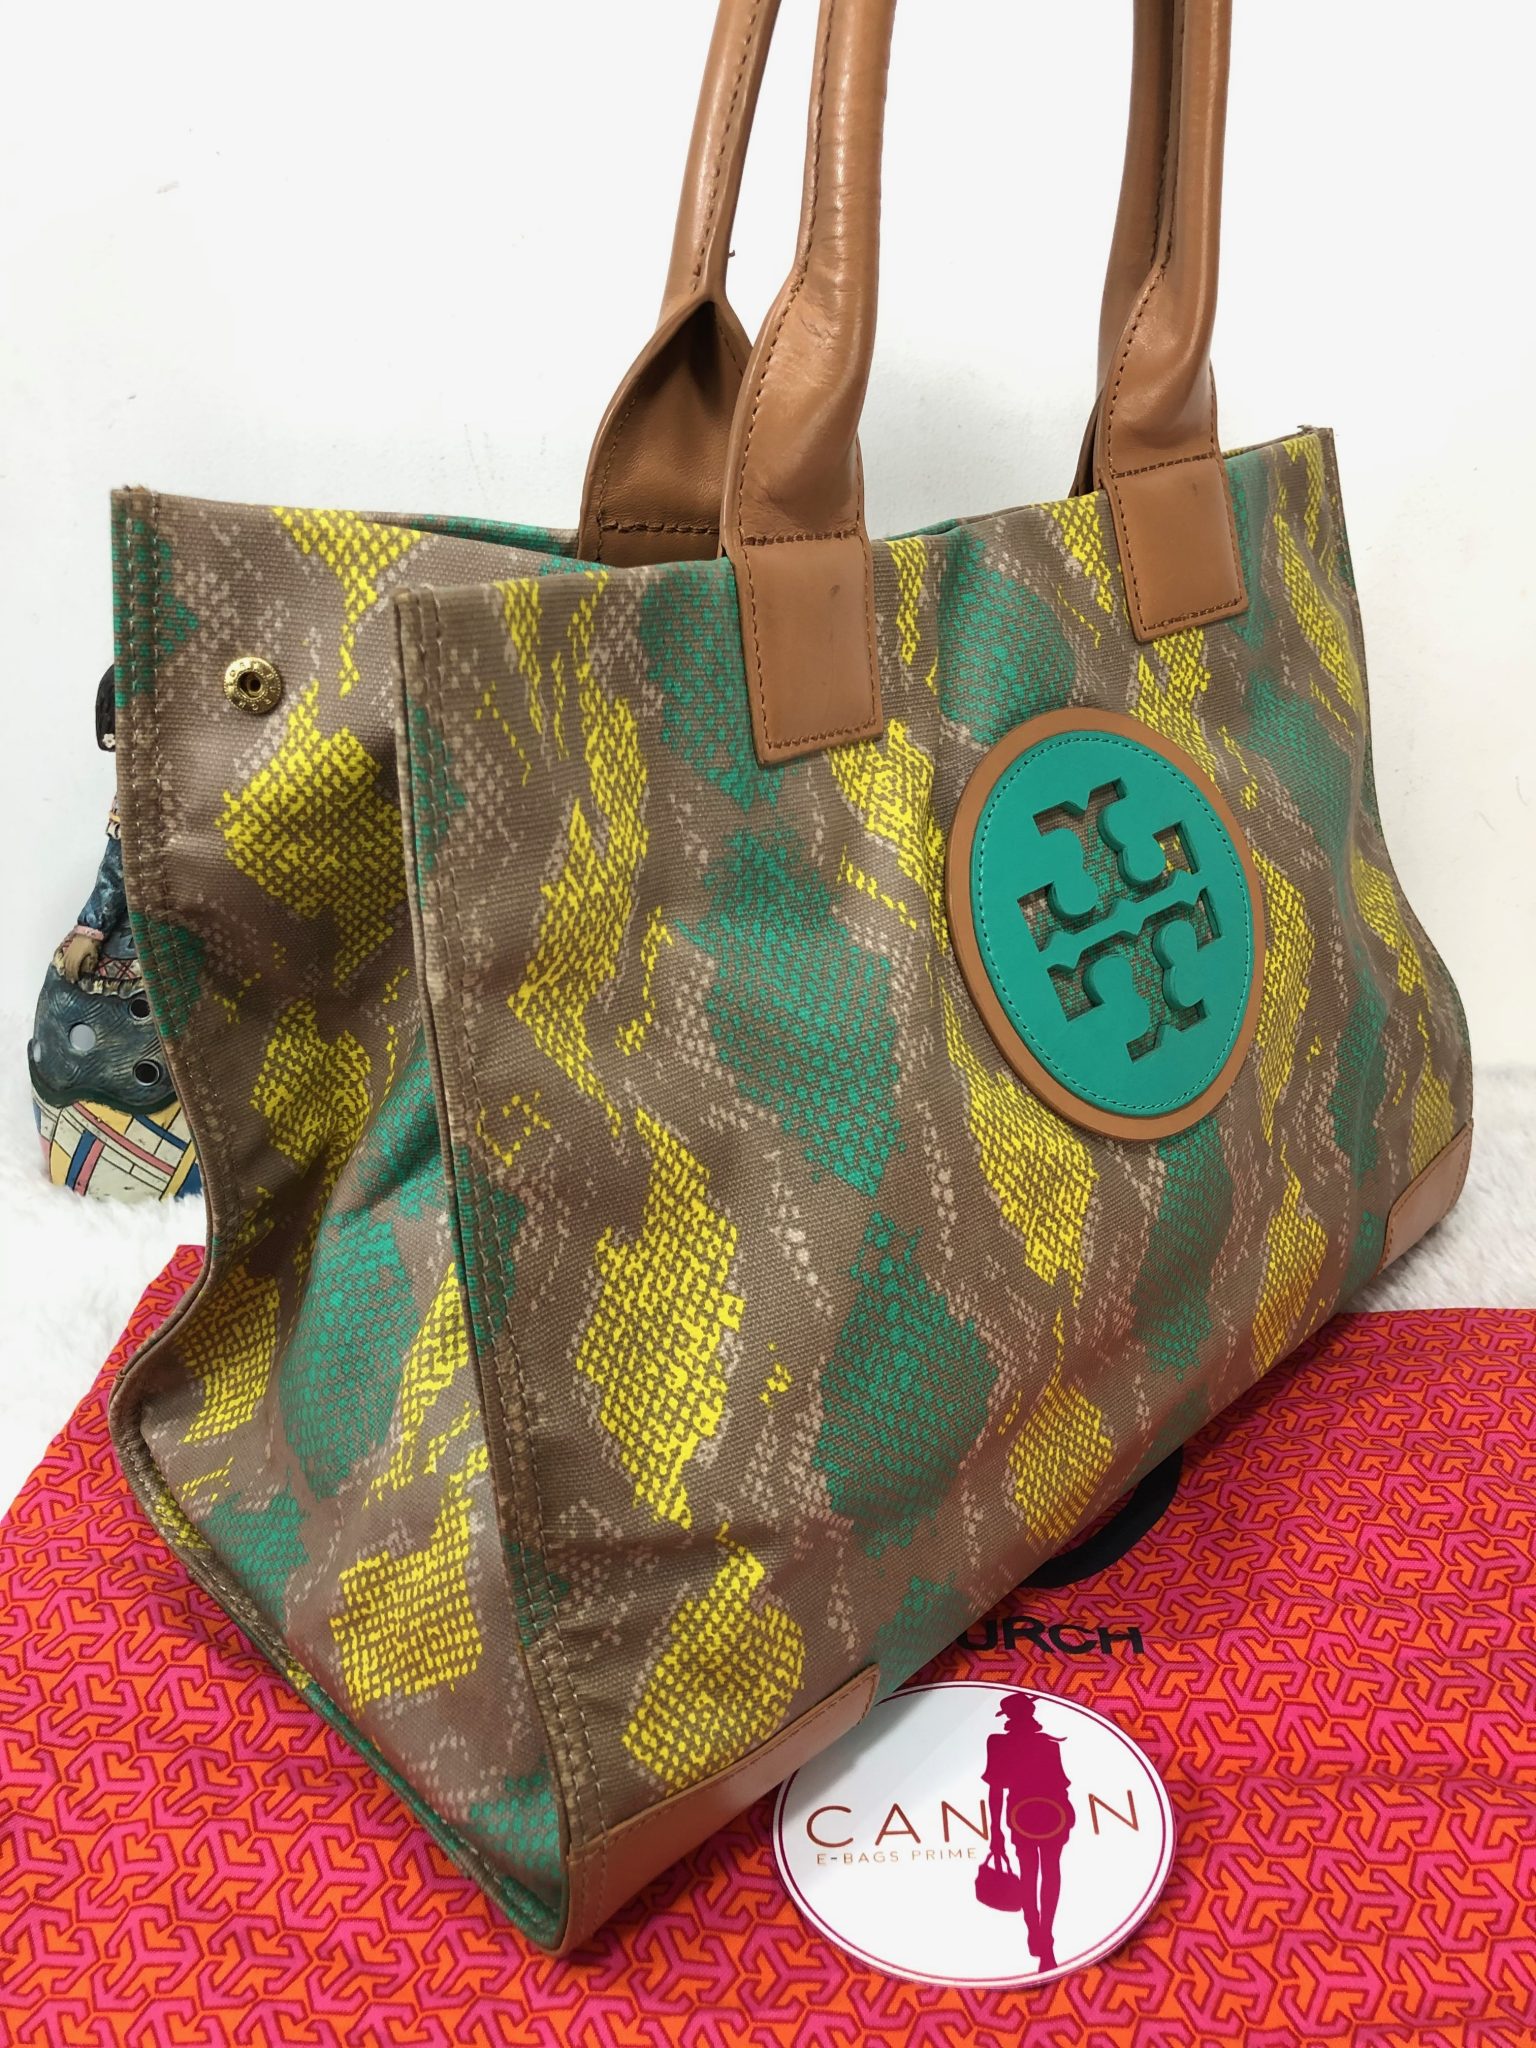 Tory Burch Ella Straw mini tote bag for Women - Multicolored in UAE